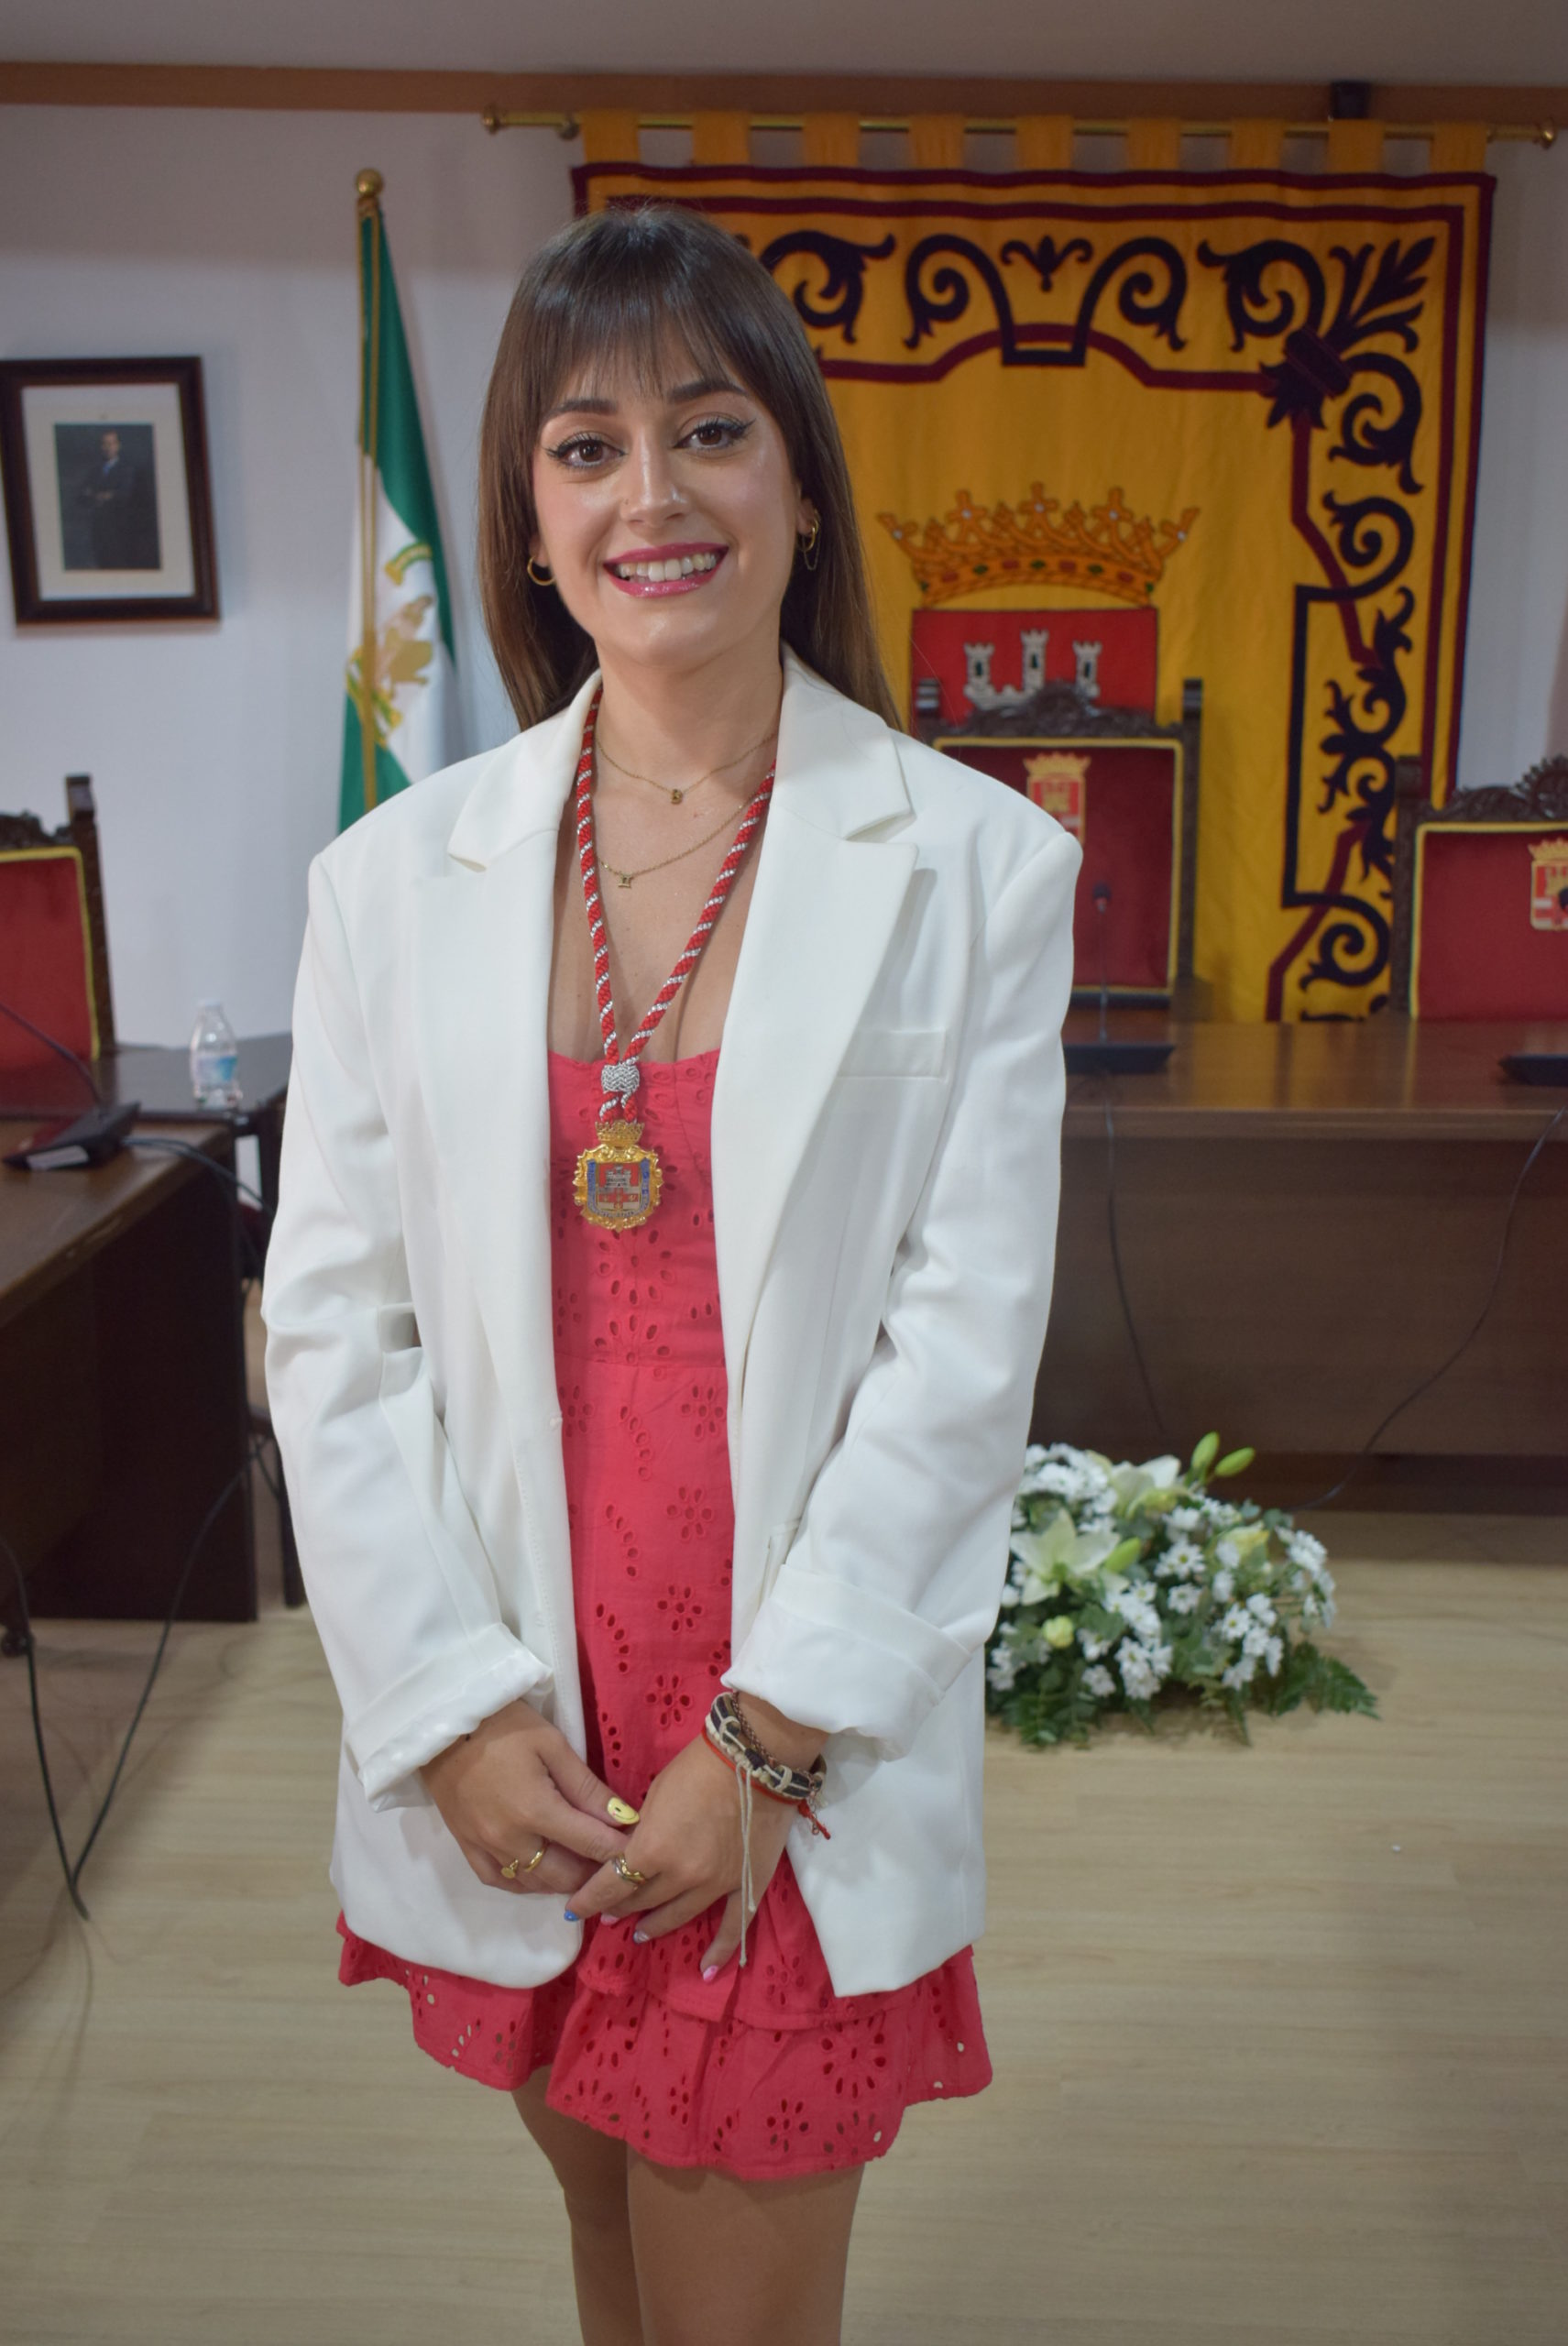 Beatriz Delis Rodríguez (IU)